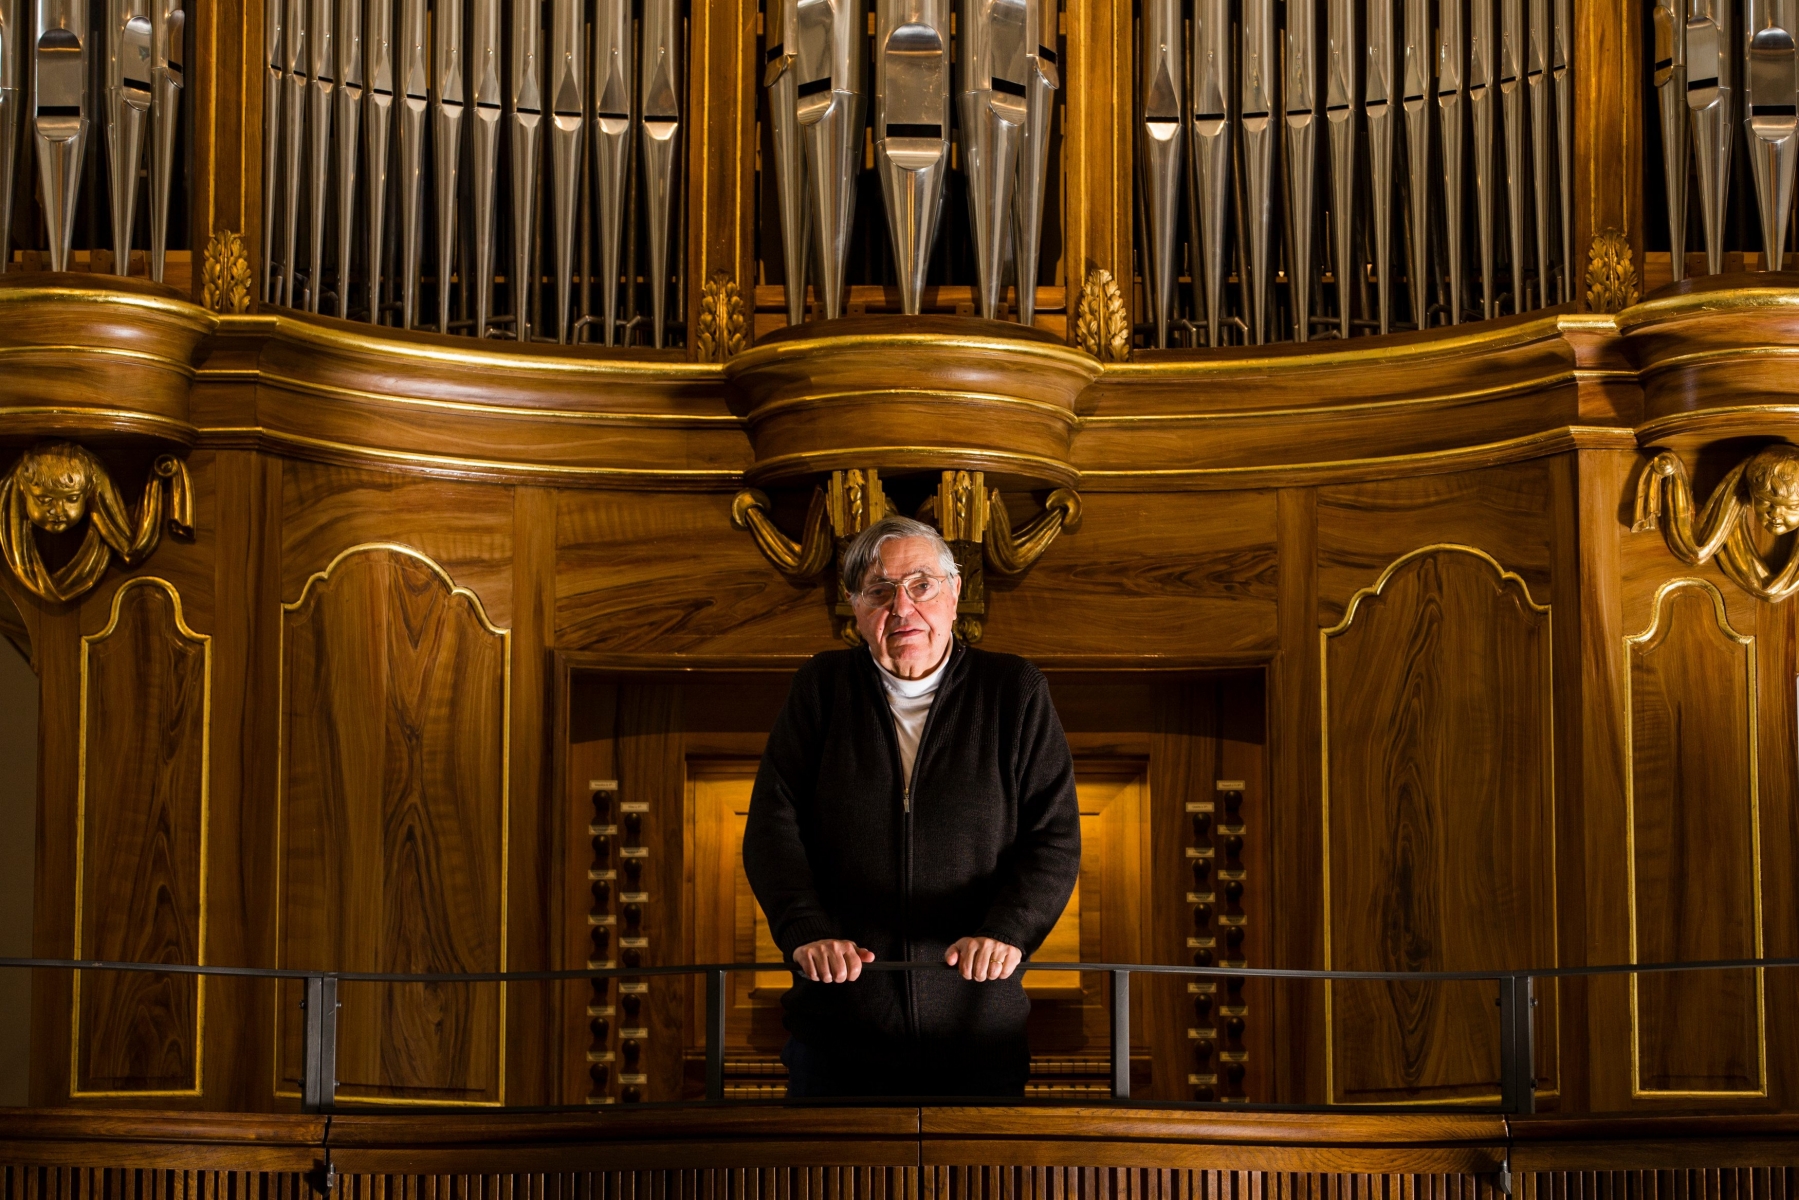 Nyon, mardi 29 novembre 2016
Portrait de Daniel Bouldjoua musicien, organiste et compositeur, au temple de Nyon

Sigfredo Haro Portrait Daniel Bouldjoua, Nyon